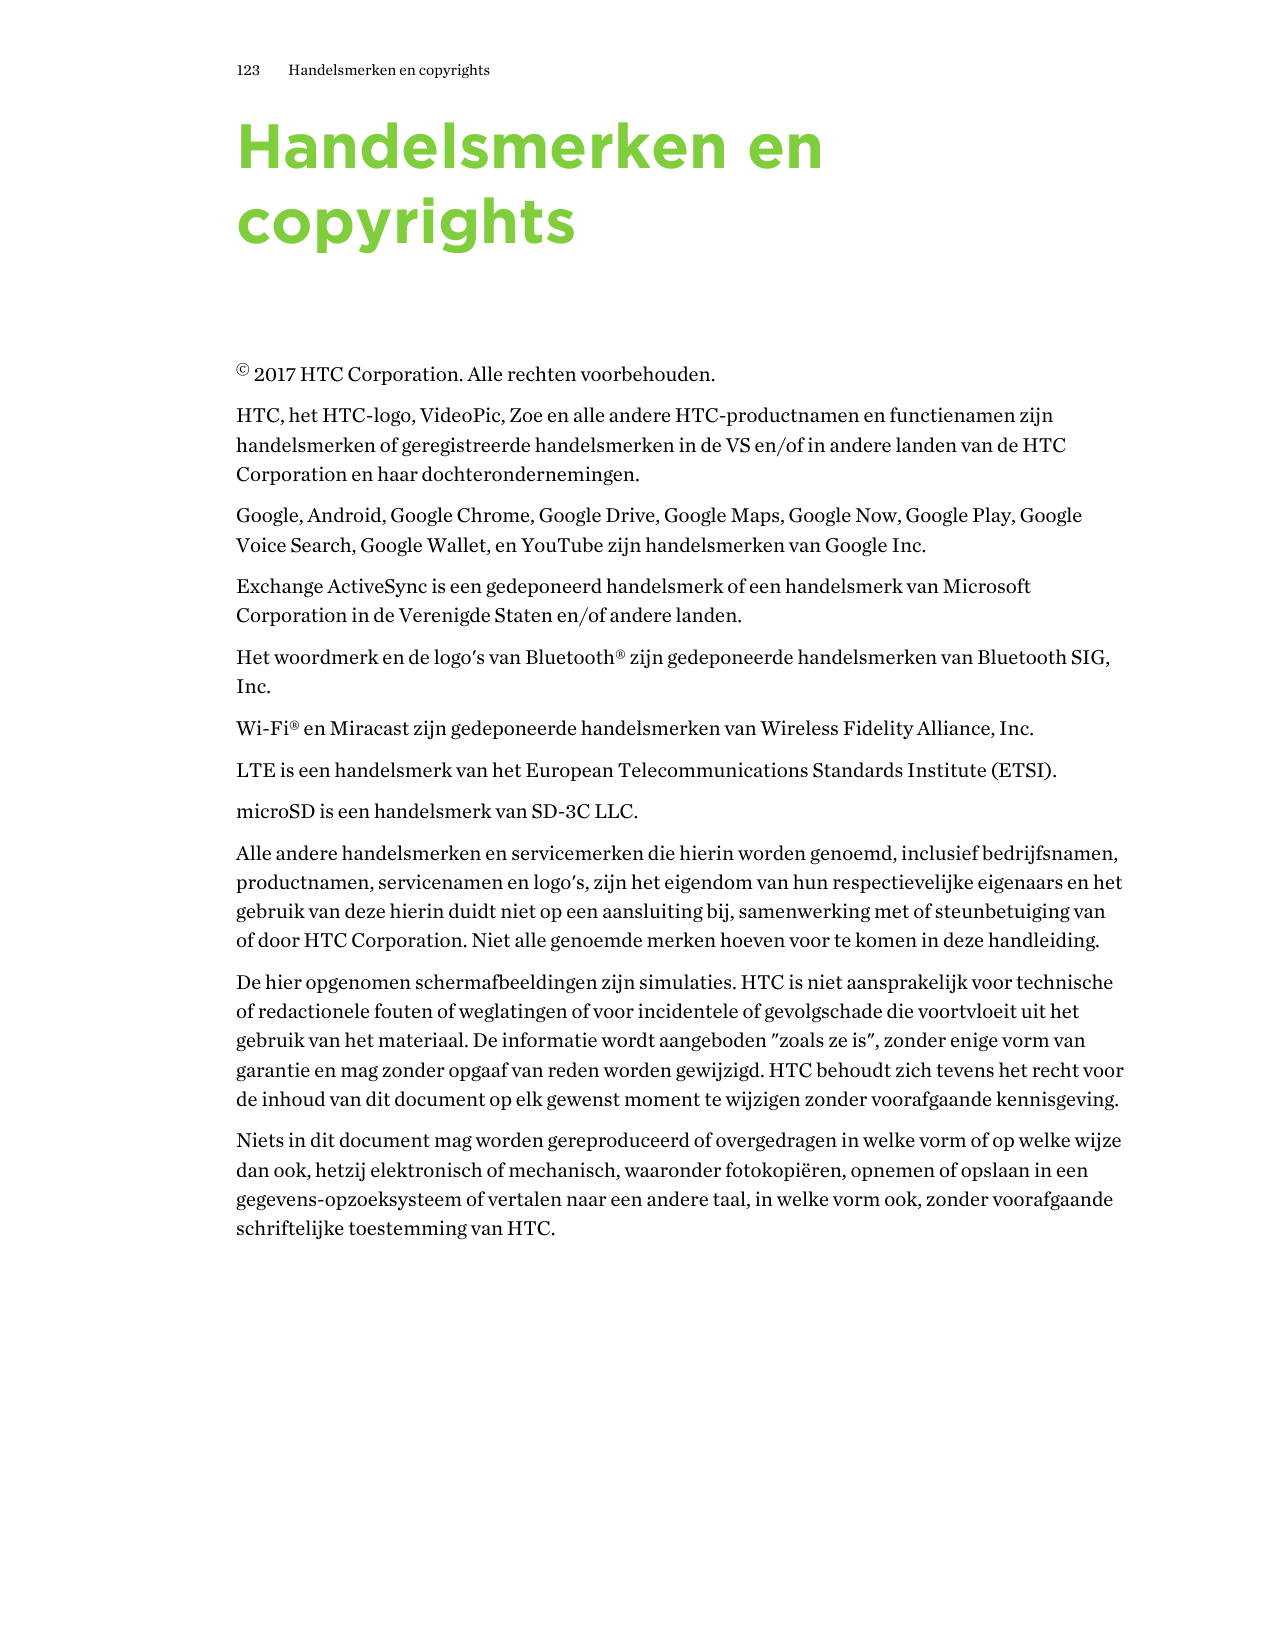 123Handelsmerken en copyrightsHandelsmerken encopyrights© 2017 HTC Corporation. Alle rechten voorbehouden.HTC, het HTC-logo, Vid